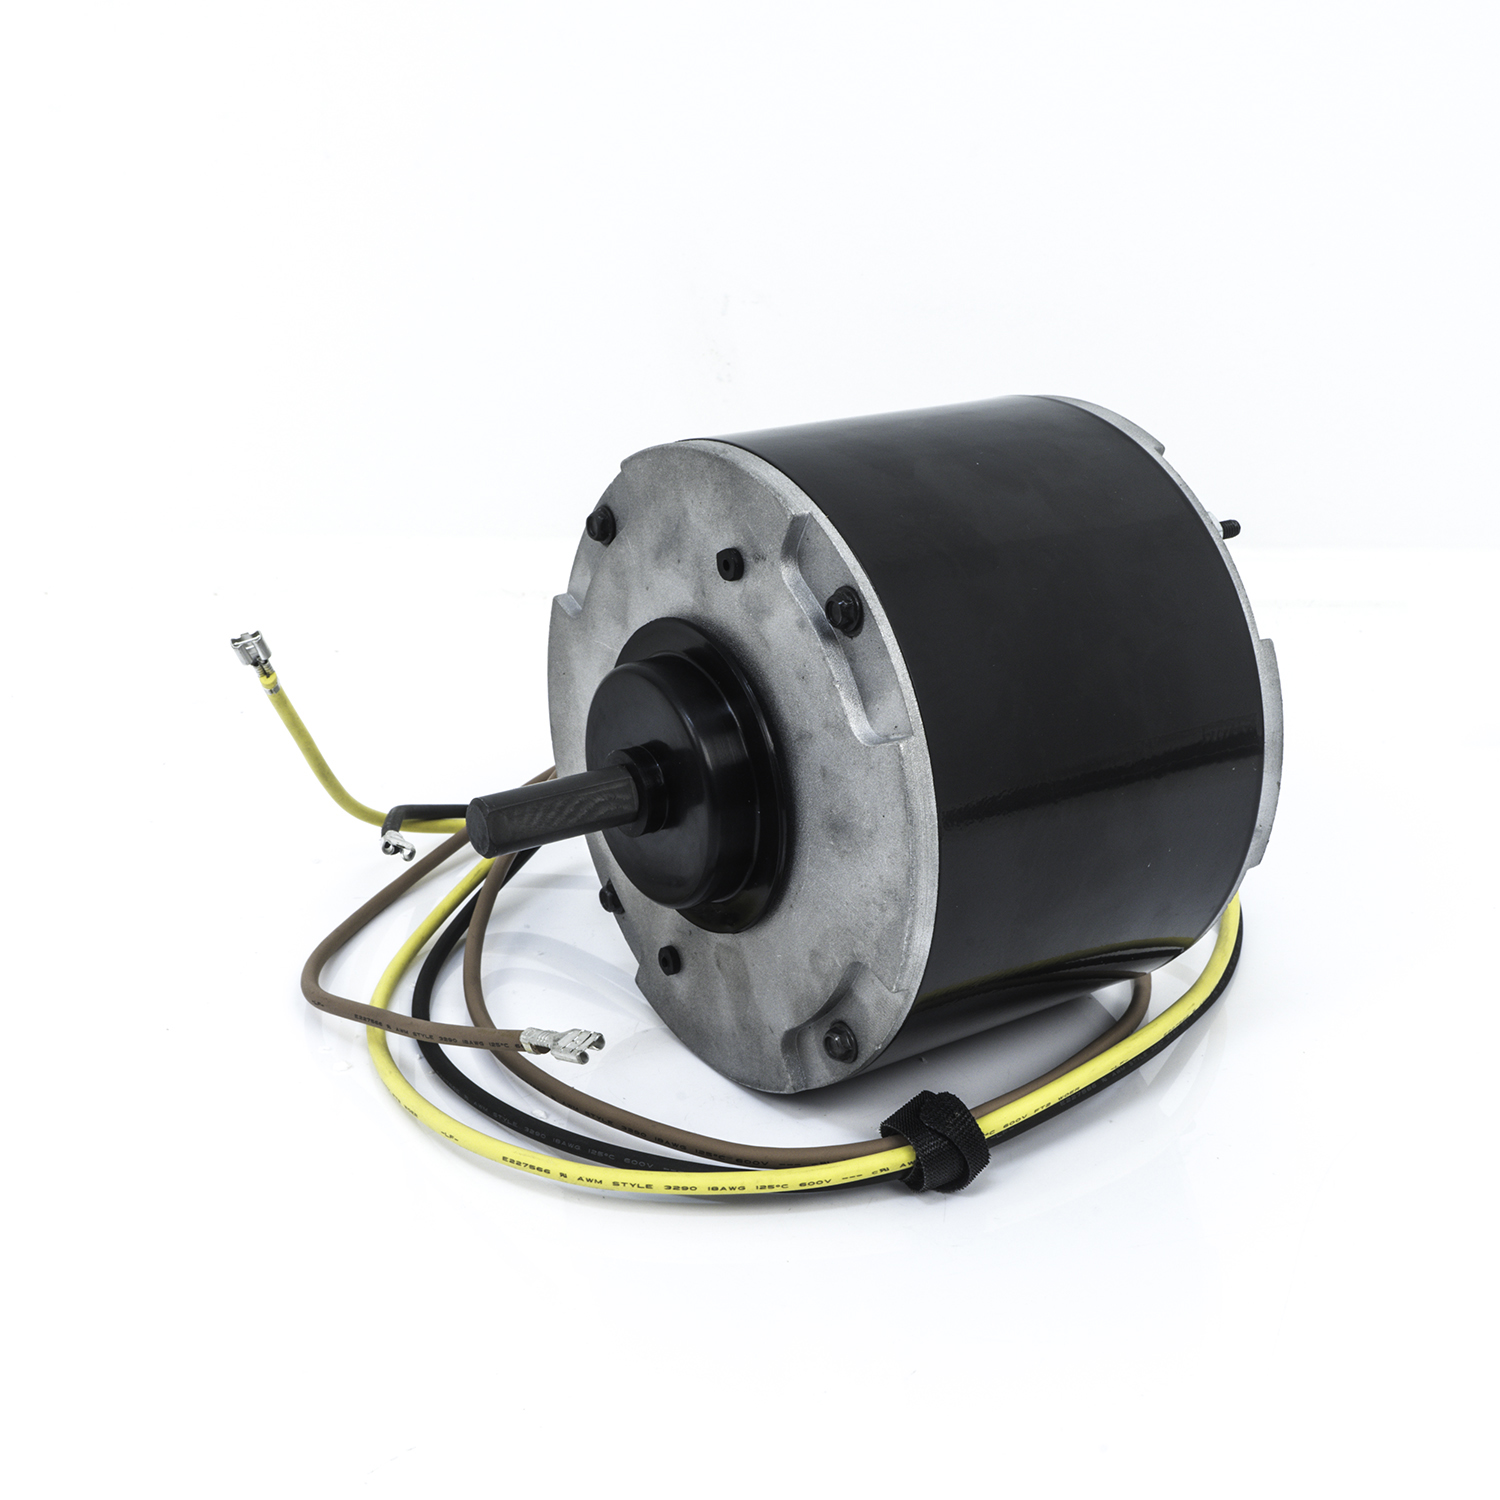 5 5/8" Diameter Condenser Fan Motor, 1/6 HP, 208-230 Volts, 1500 RPM